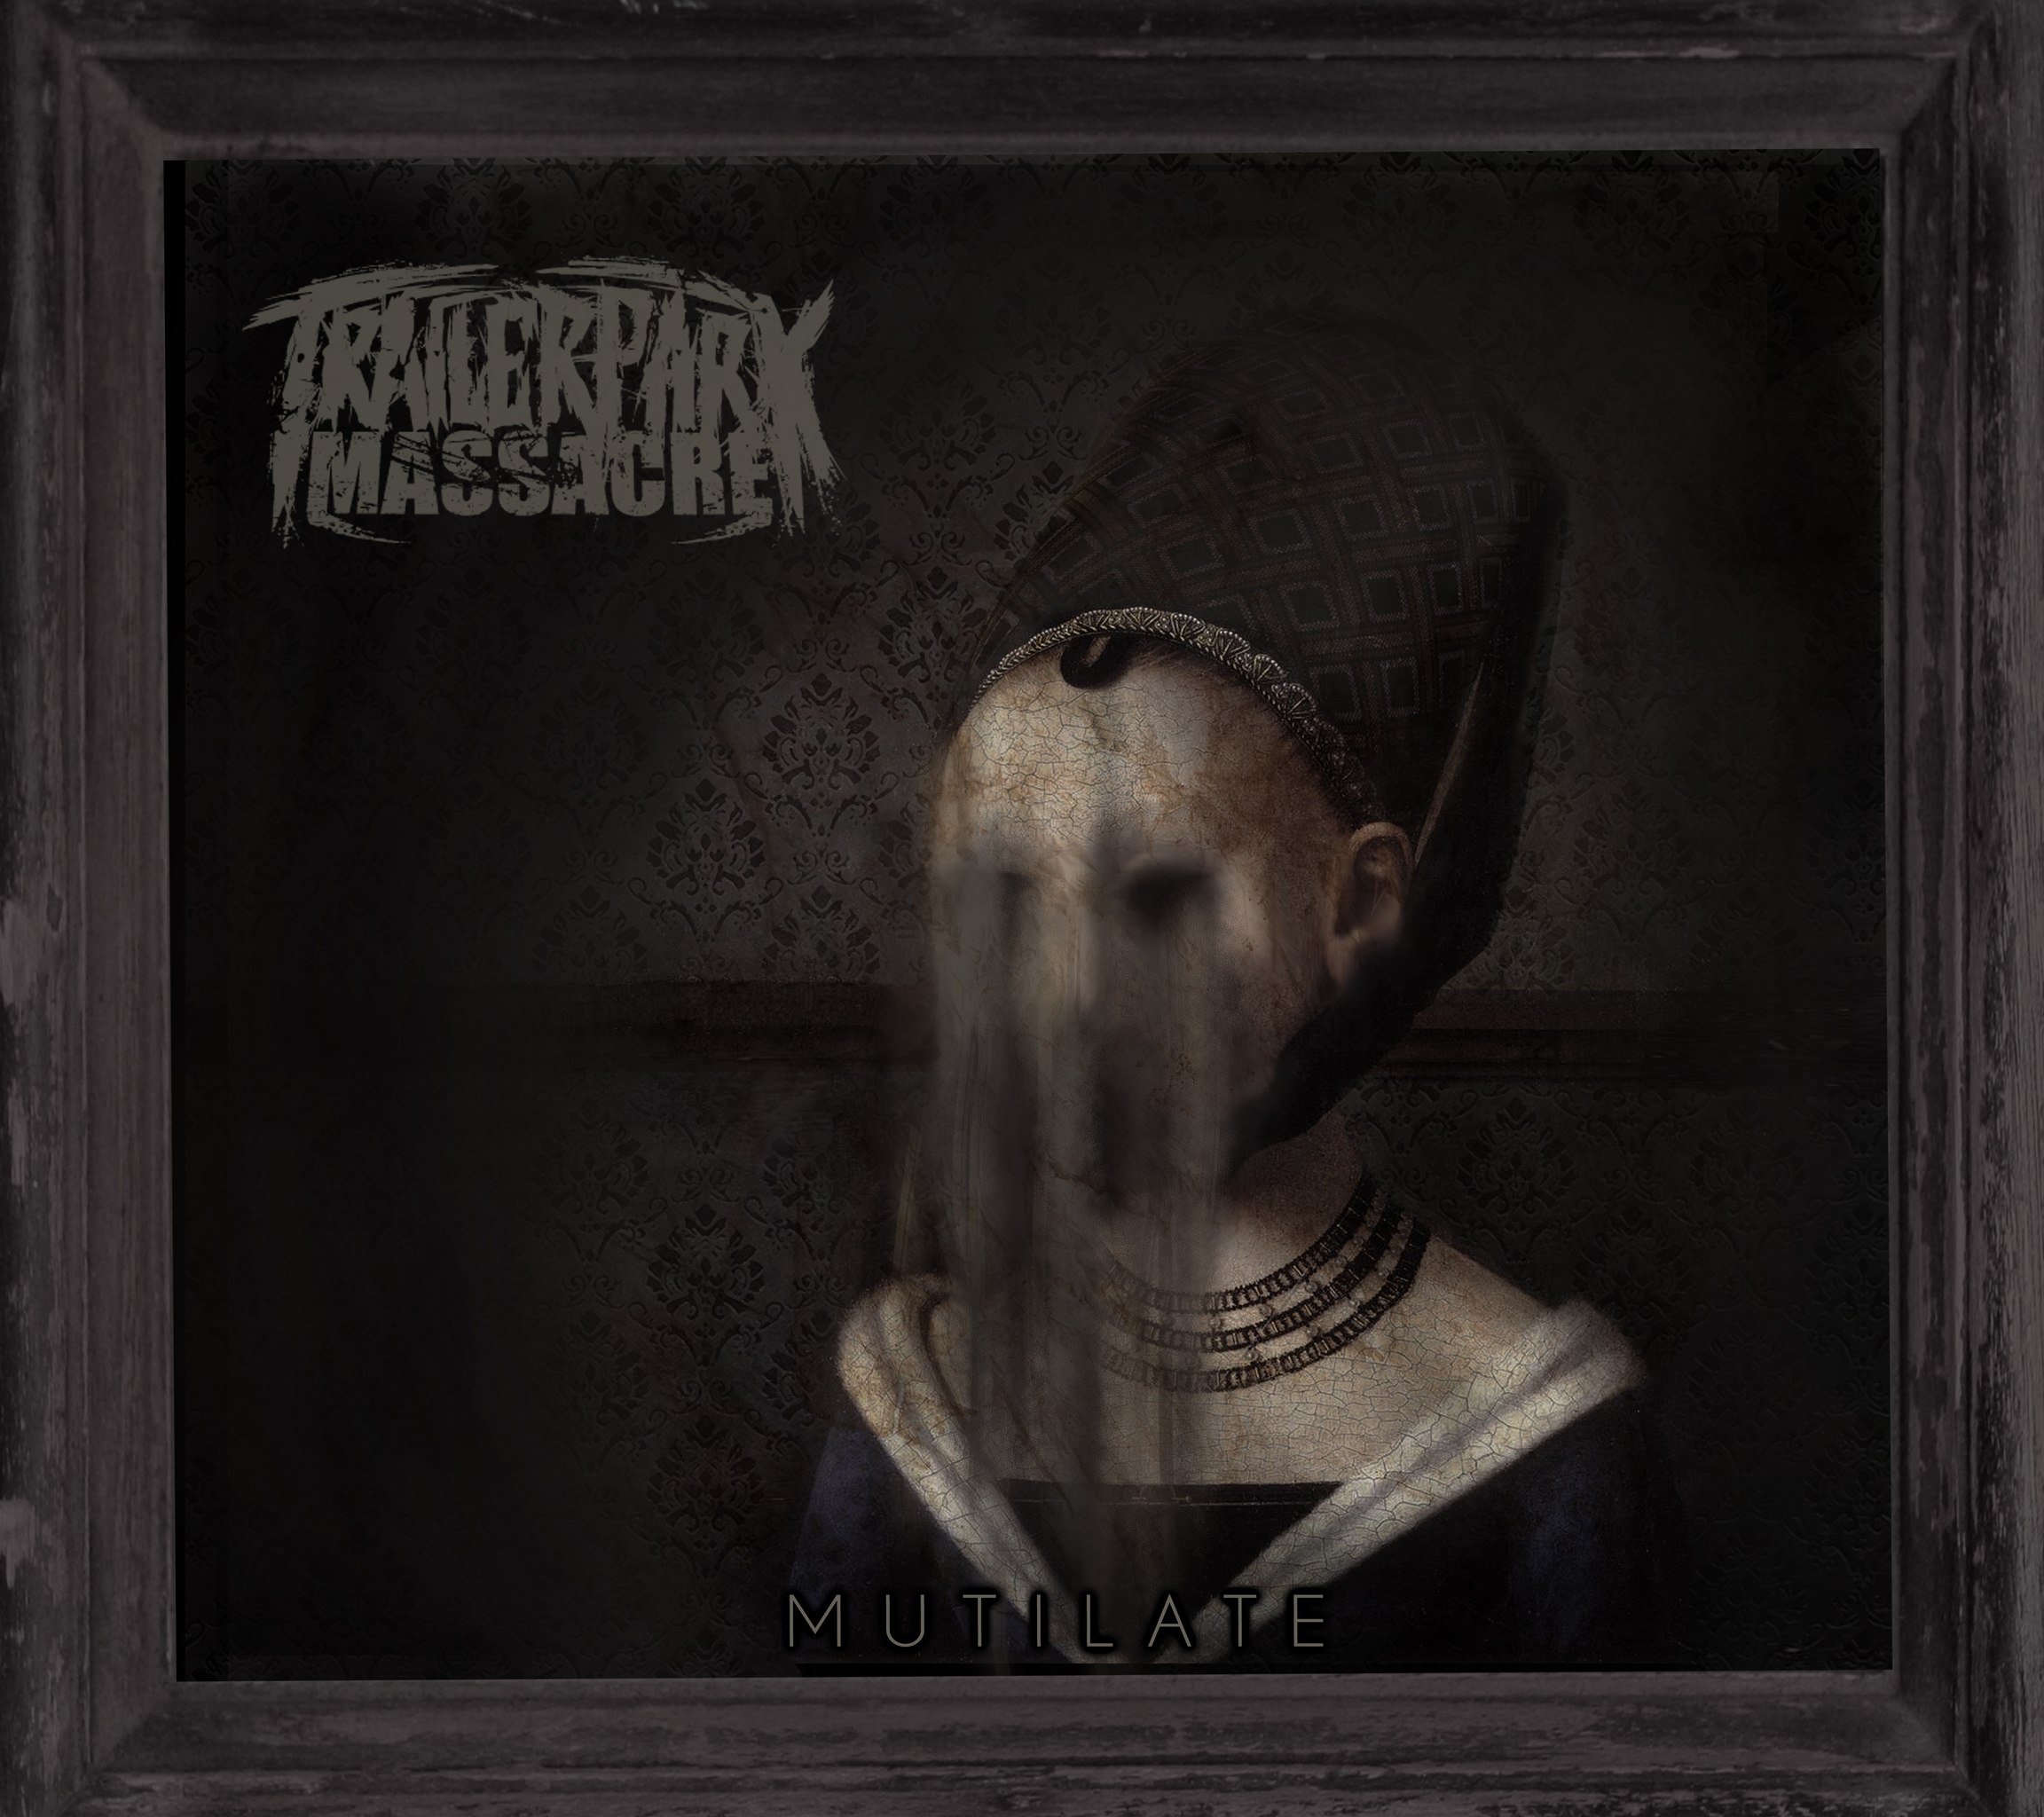 Trailer Park Massacre - Mutilate [EP] (2012)